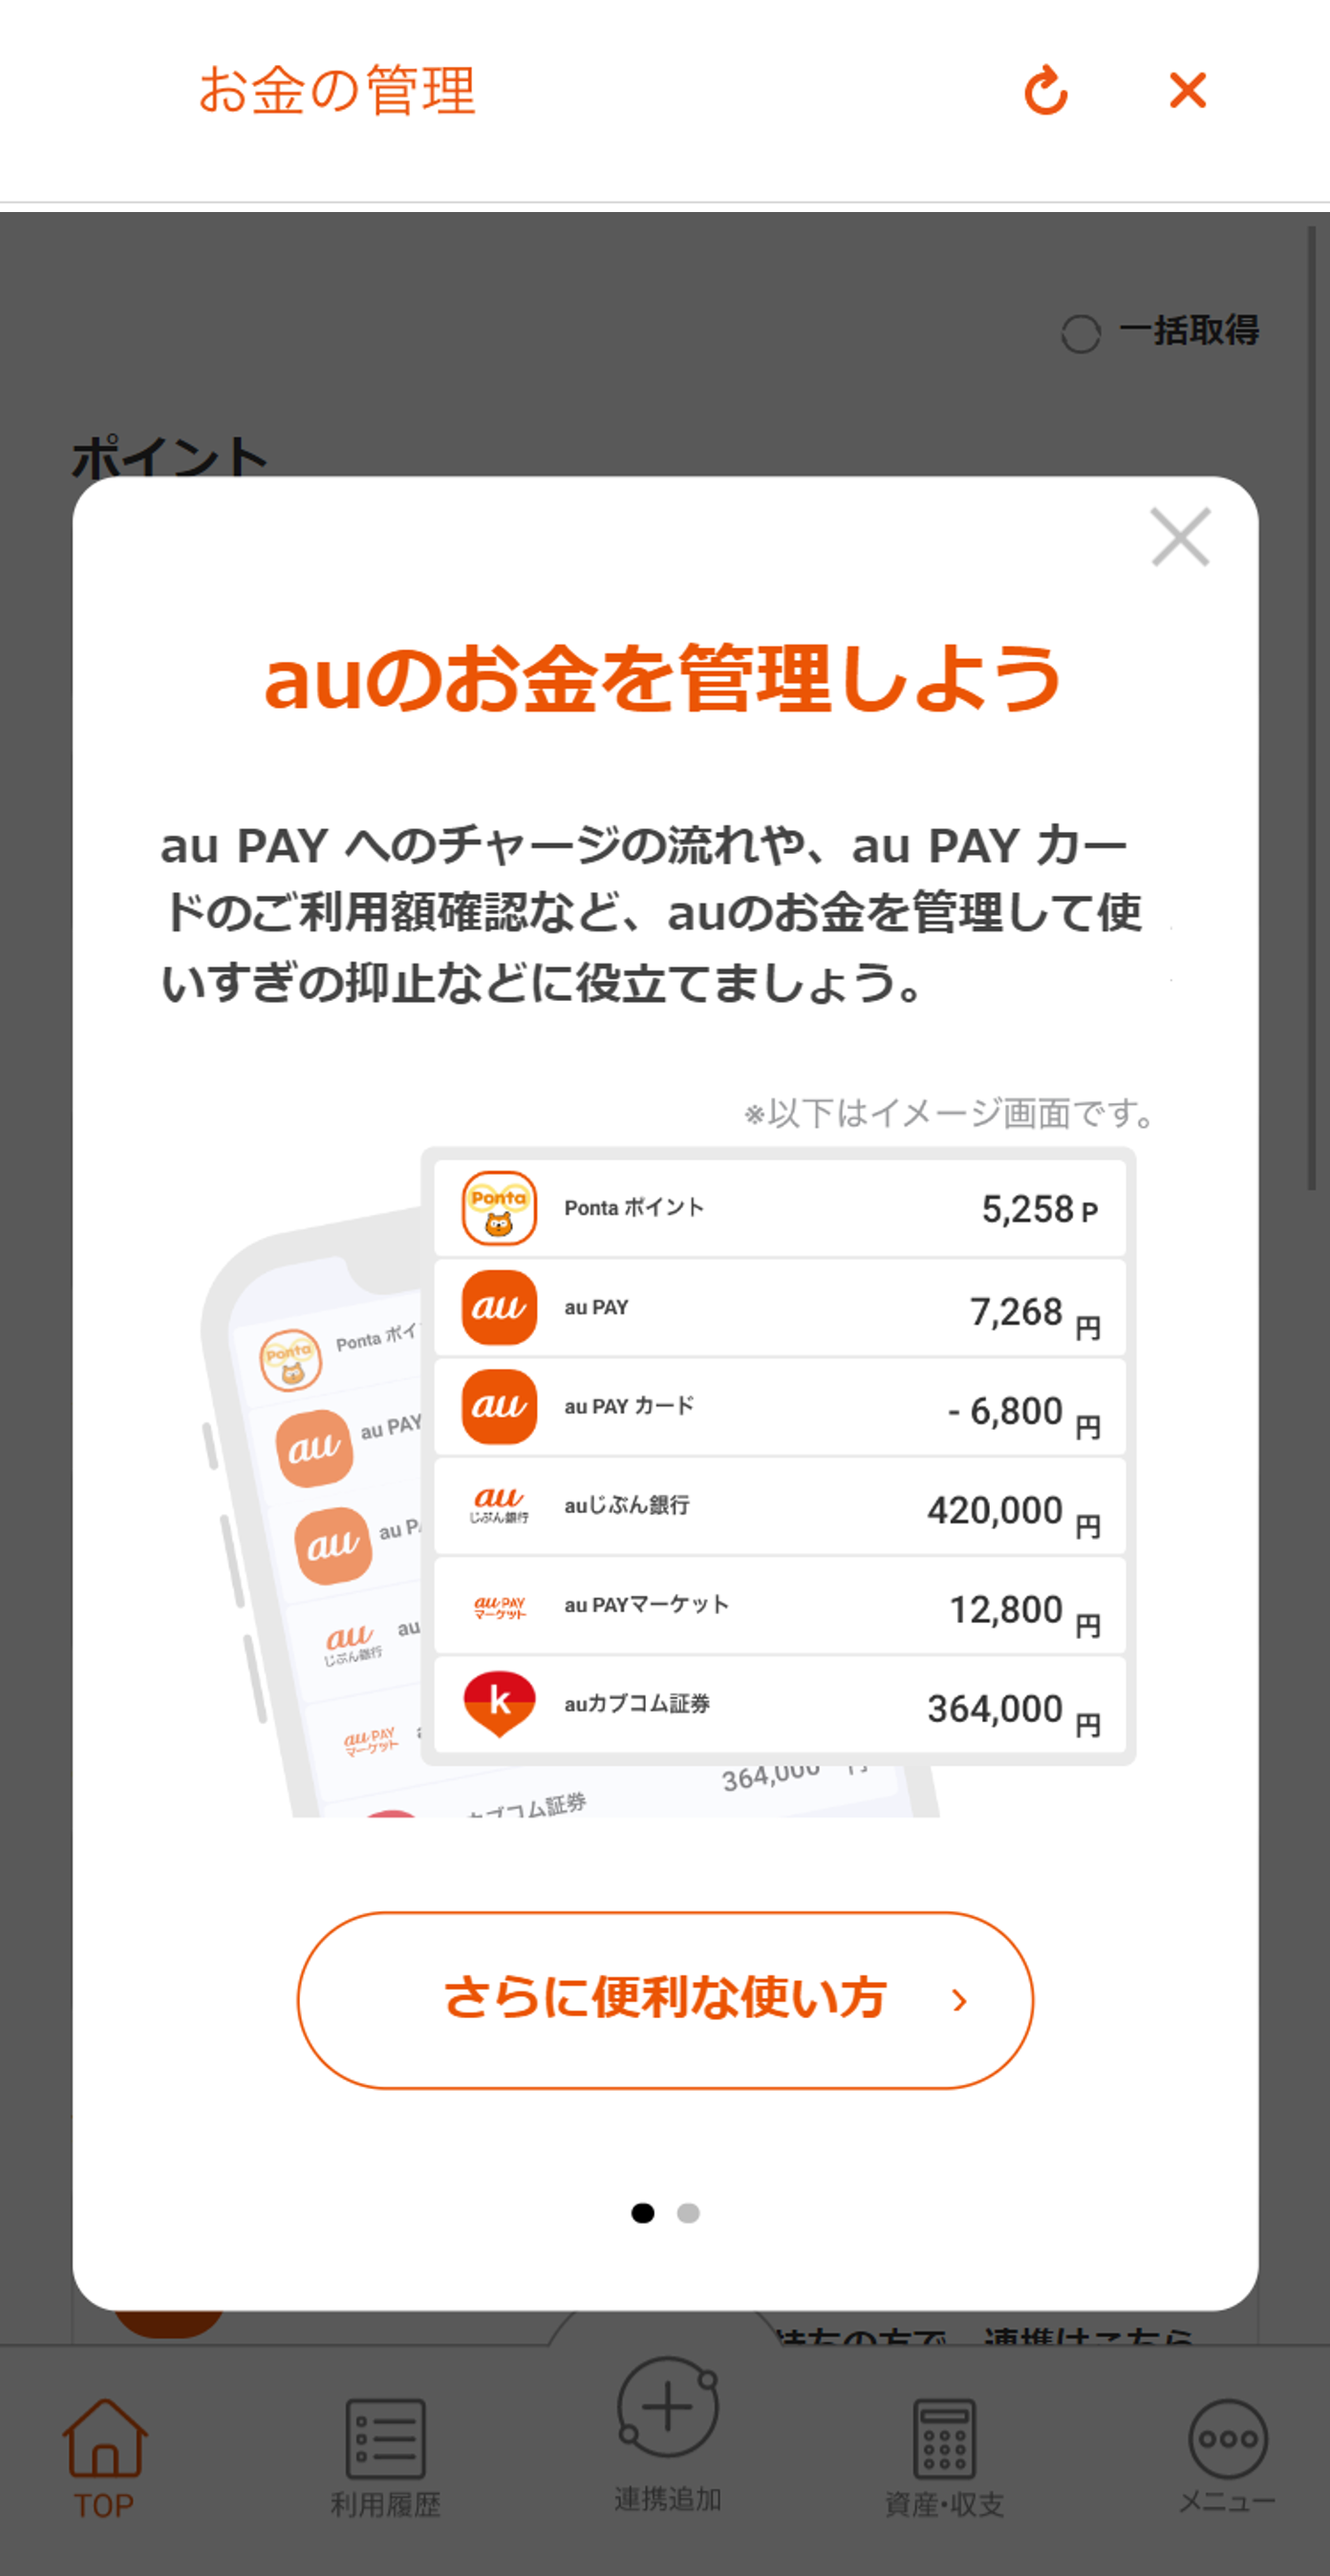 au PAY アプリ「お金の管理」連携方法 ステップ3